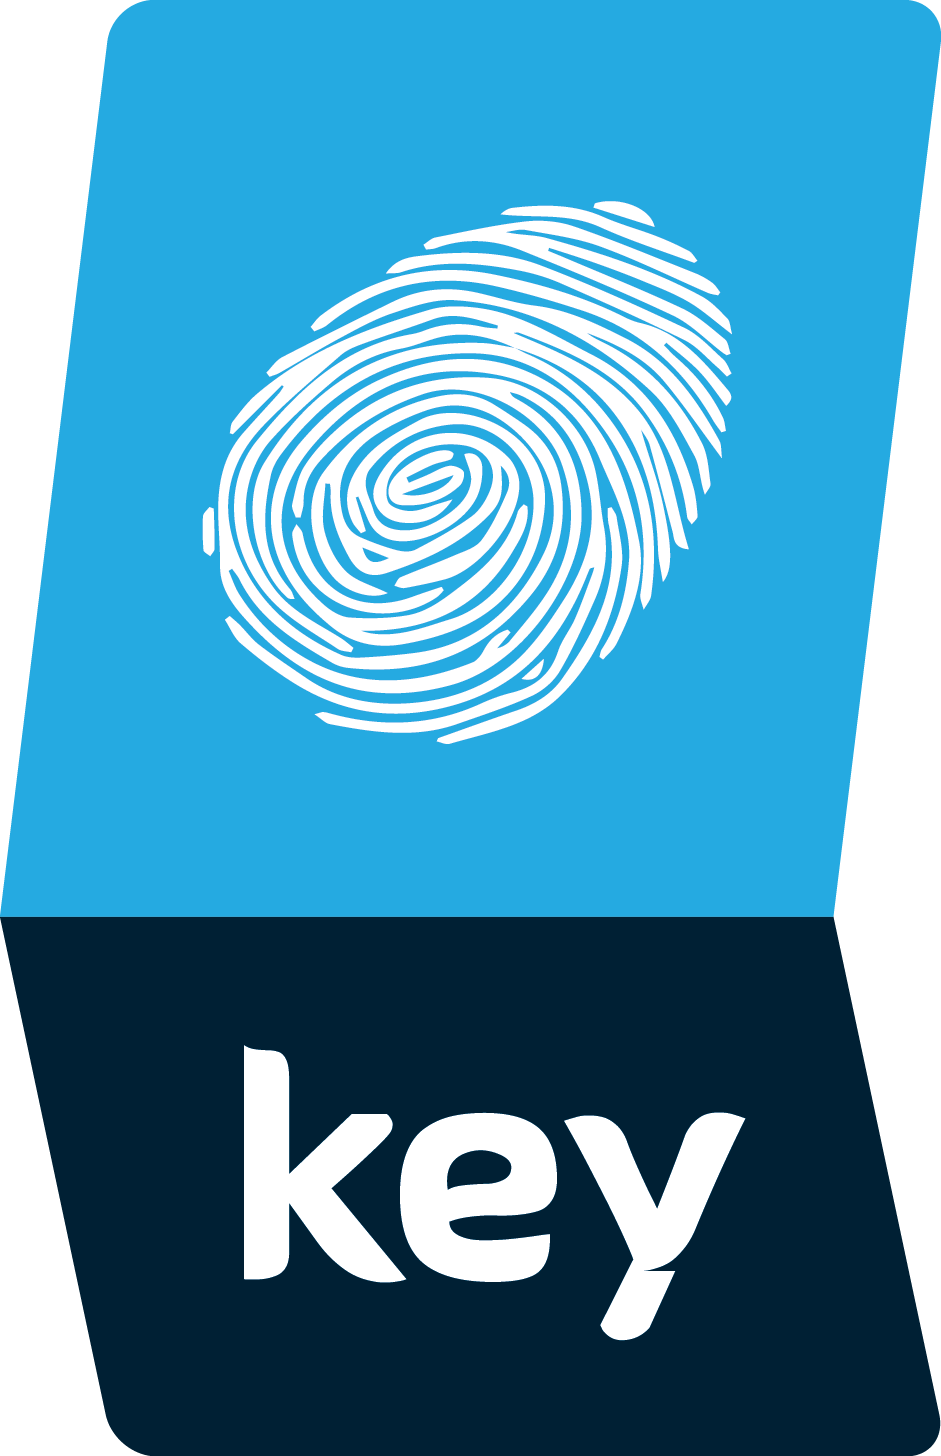 Our key logo